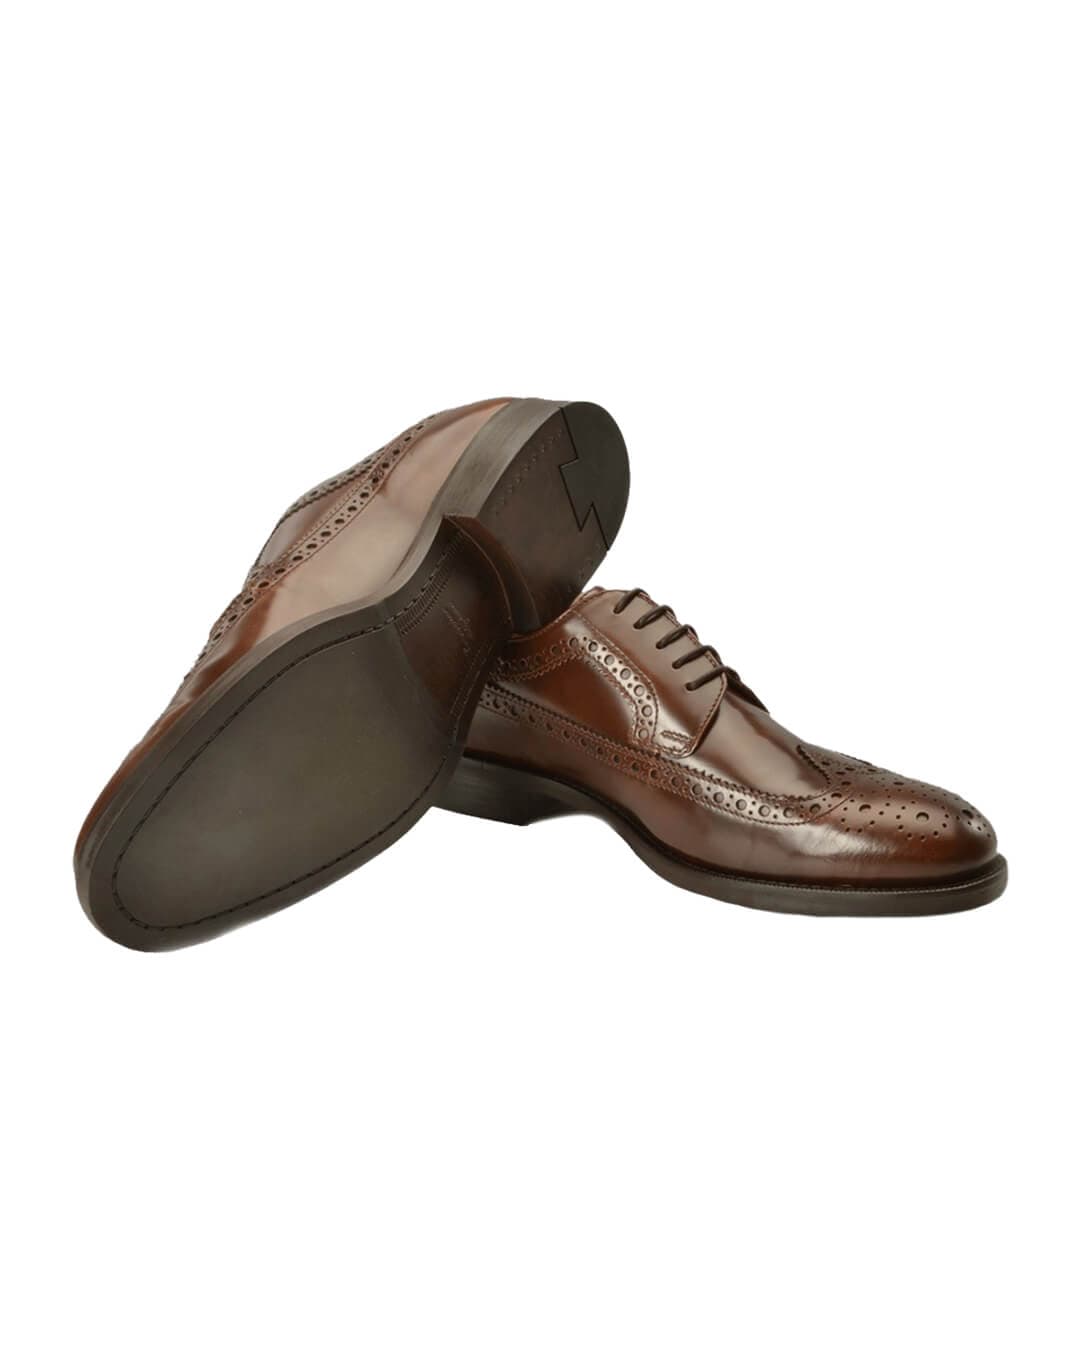 Gagliardi Shoes Gagliardi Brown Leather Brogues